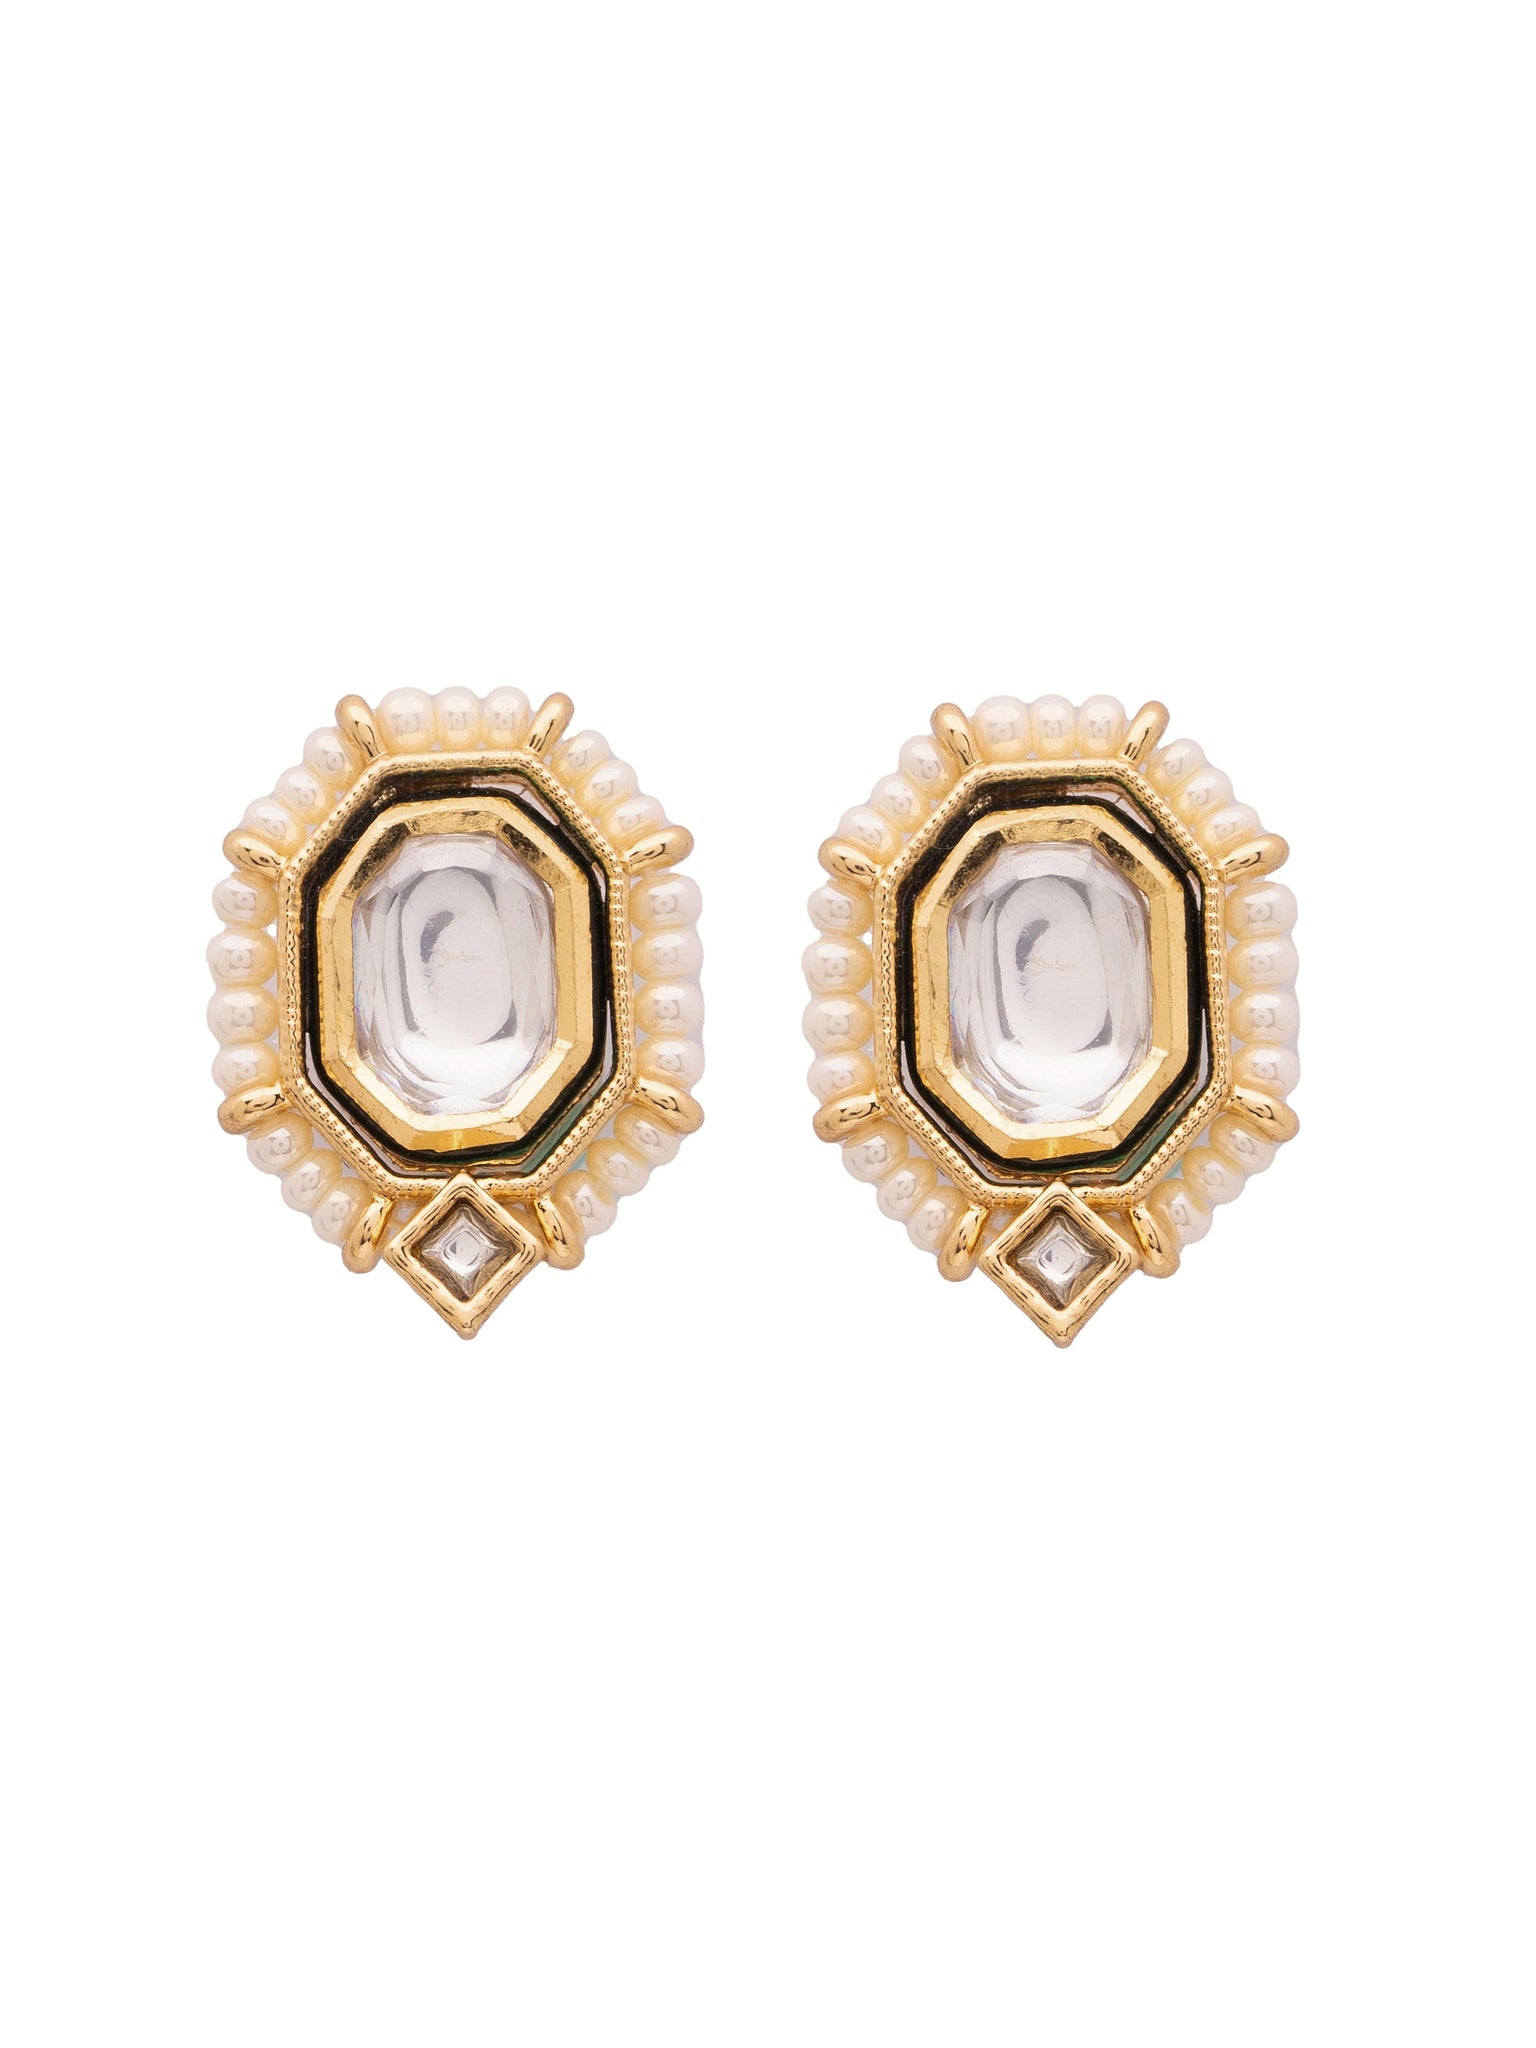  22 KT Gold Plated Royal Splendor Kundan-Polki Earrings